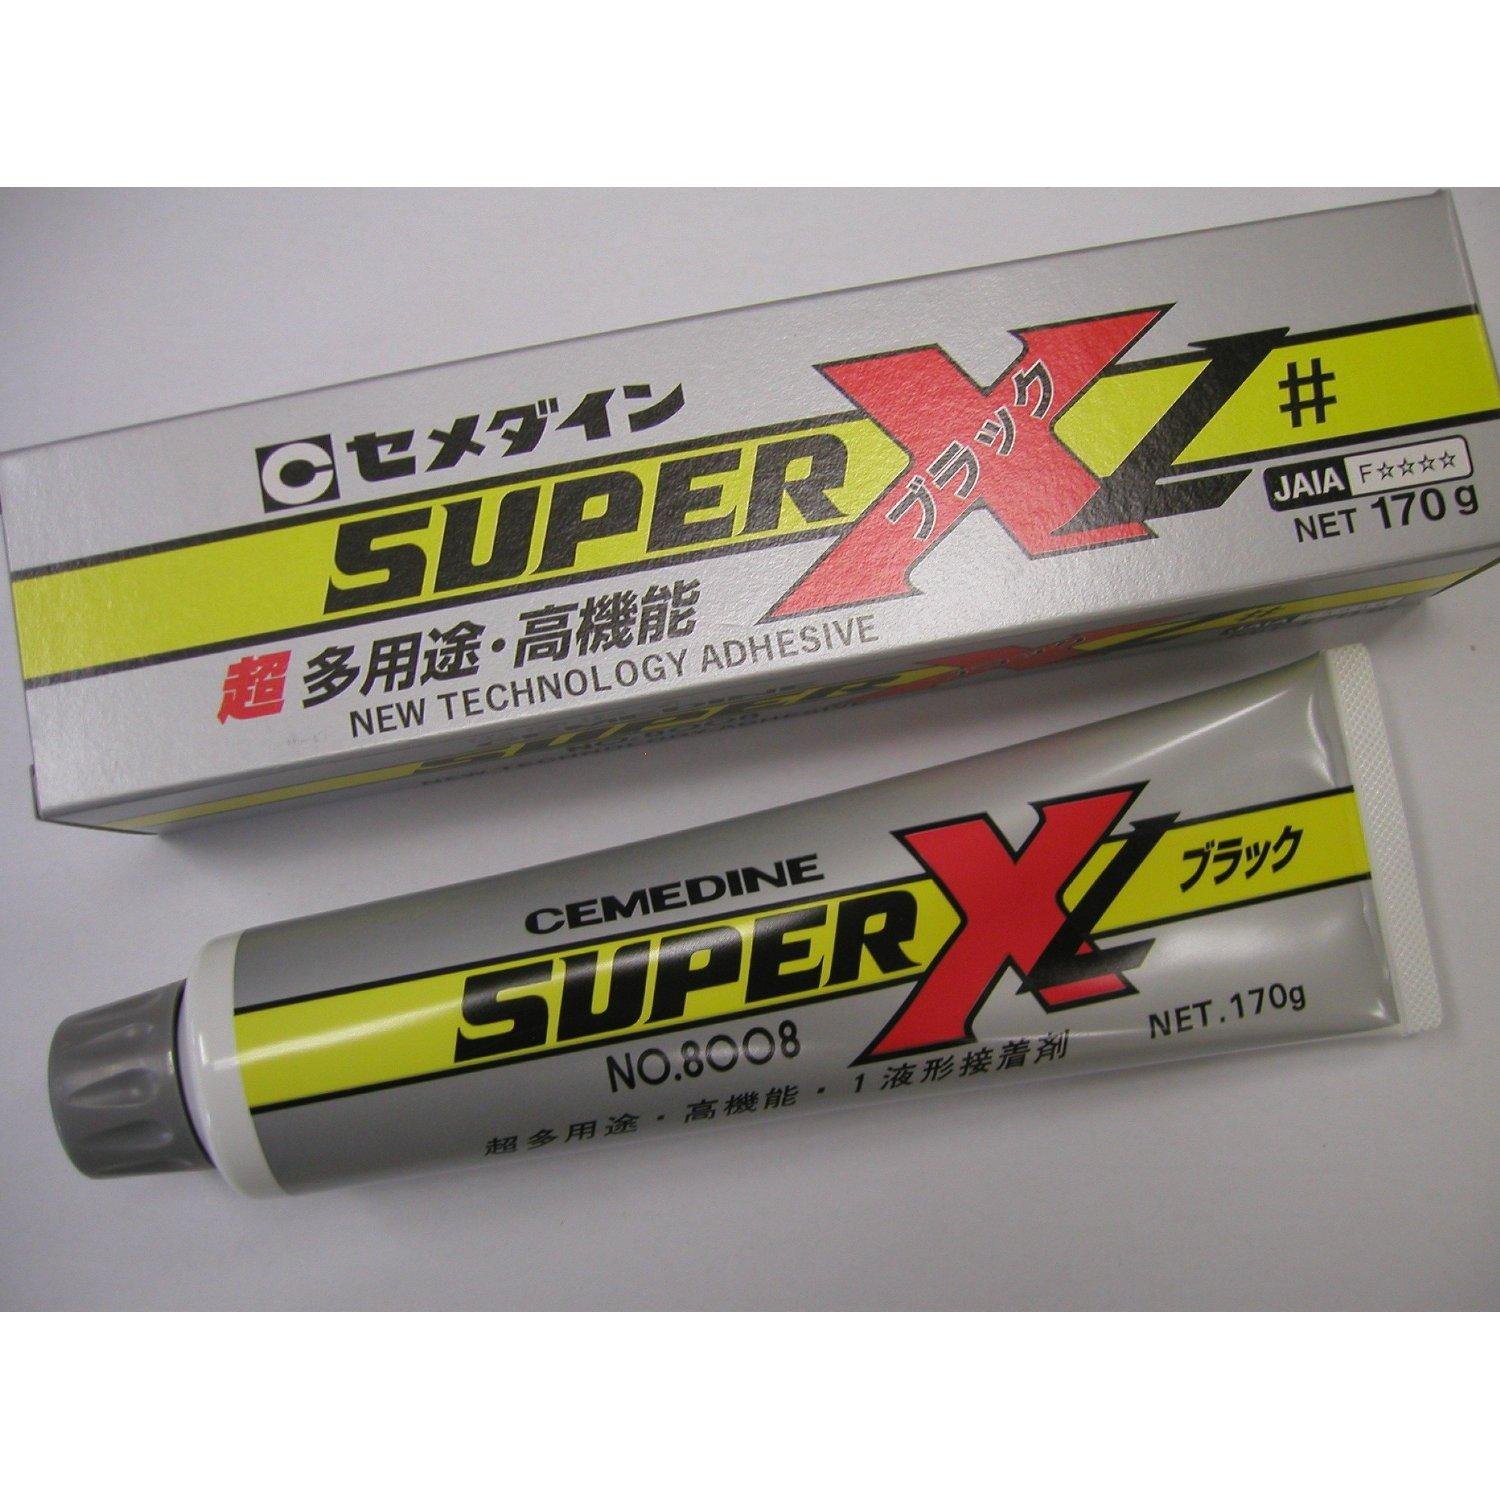 Super x no.8008L 170克 3